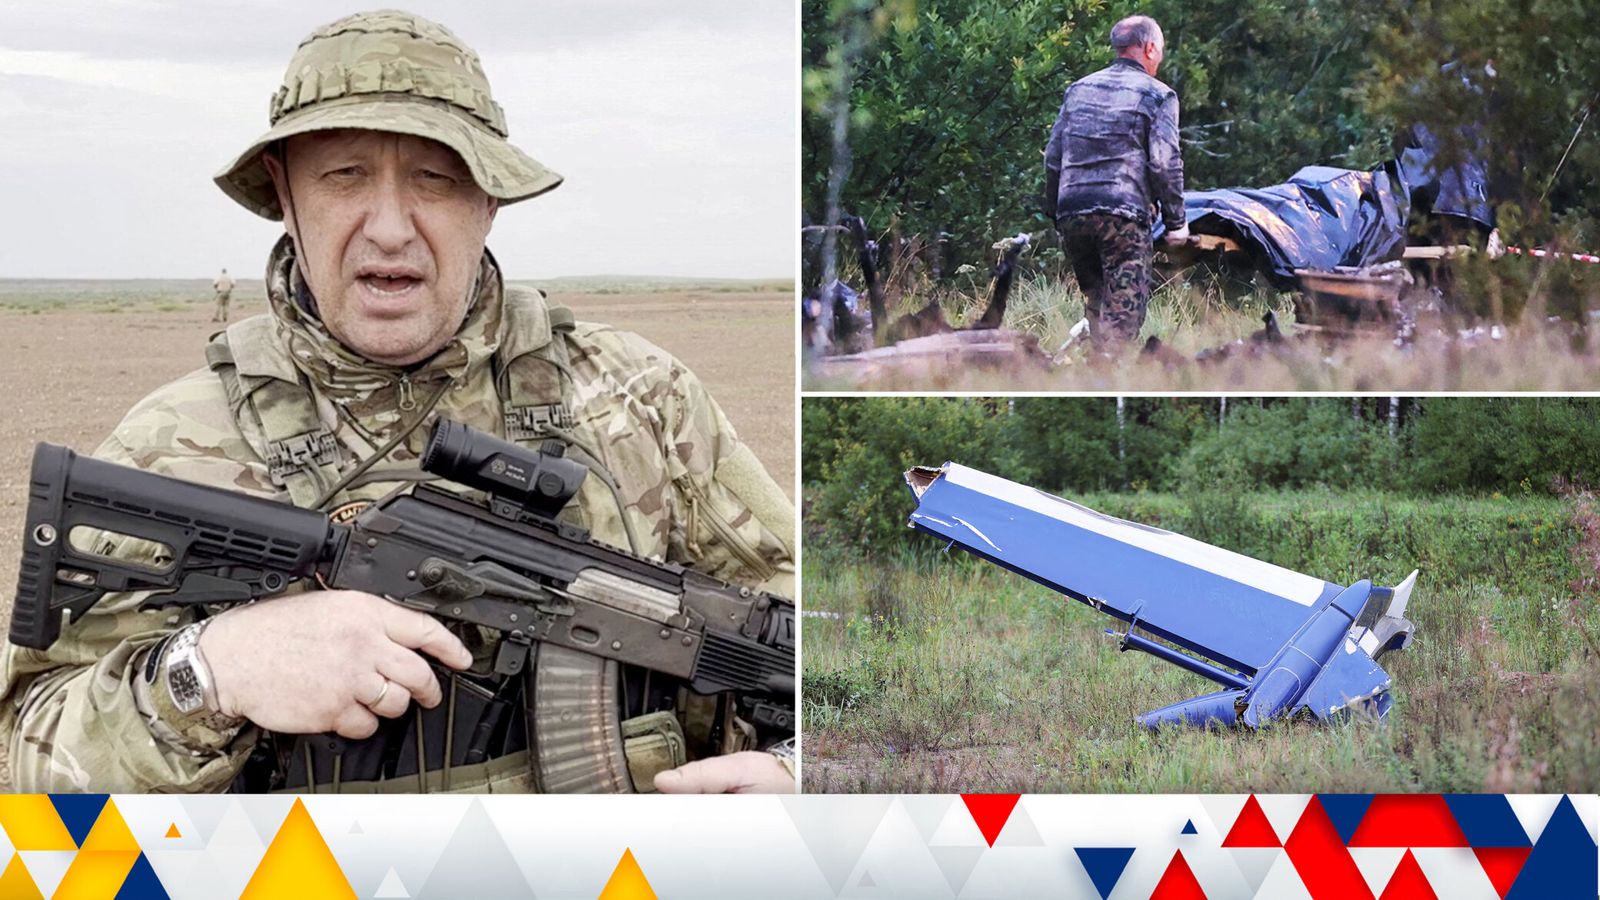 Ukraine latest: Wagner boss Yevgeny Prigozhin 'killed in plane crash